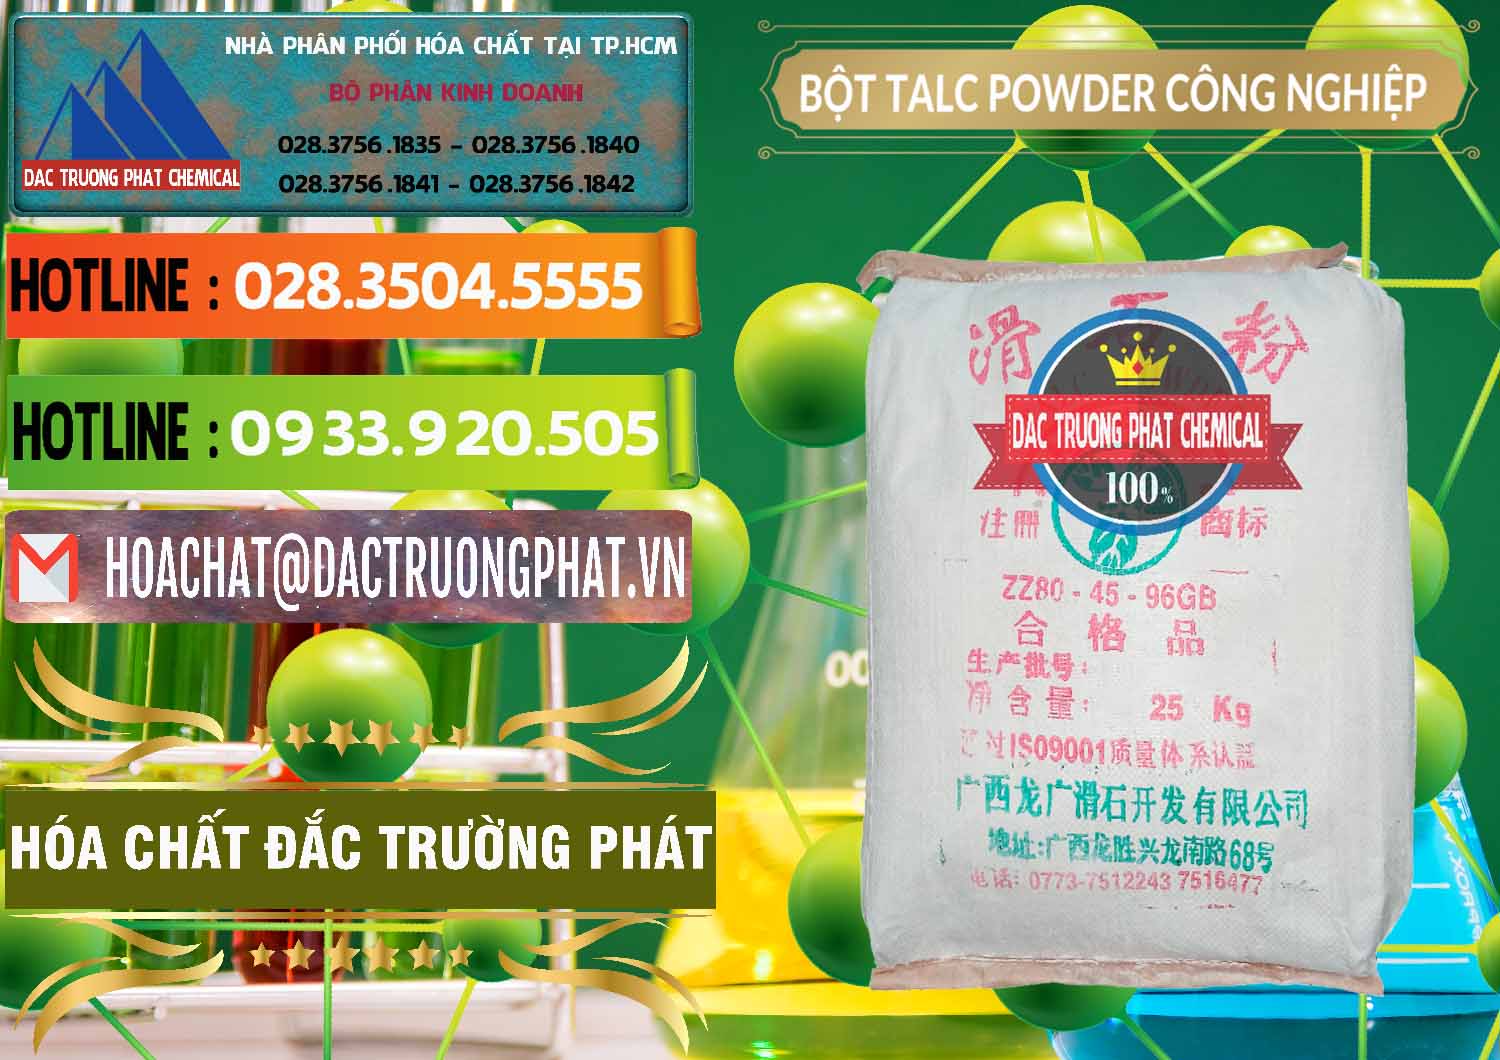 Công ty kinh doanh & bán Bột Talc Powder Công Nghiệp Trung Quốc China - 0037 - Công ty phân phối - cung cấp hóa chất tại TP.HCM - cungcaphoachat.com.vn